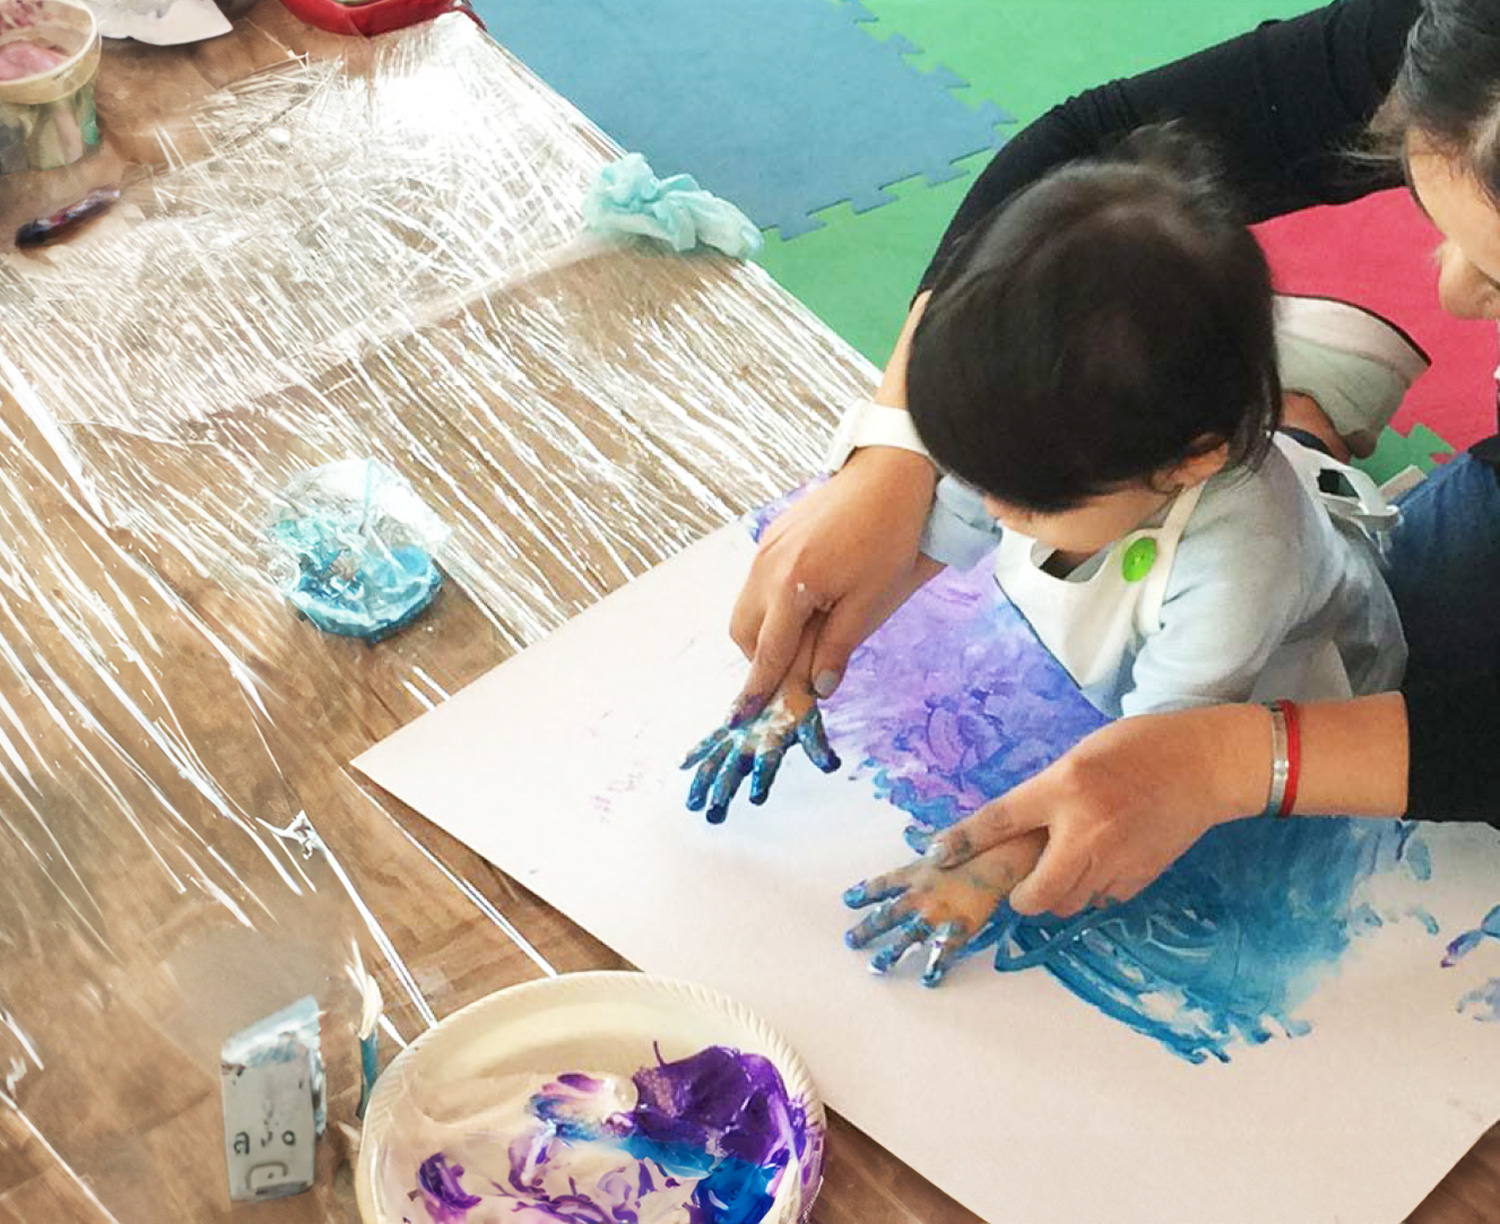 Un niño pinta con las manos con pintura azul sobre una cartulina.